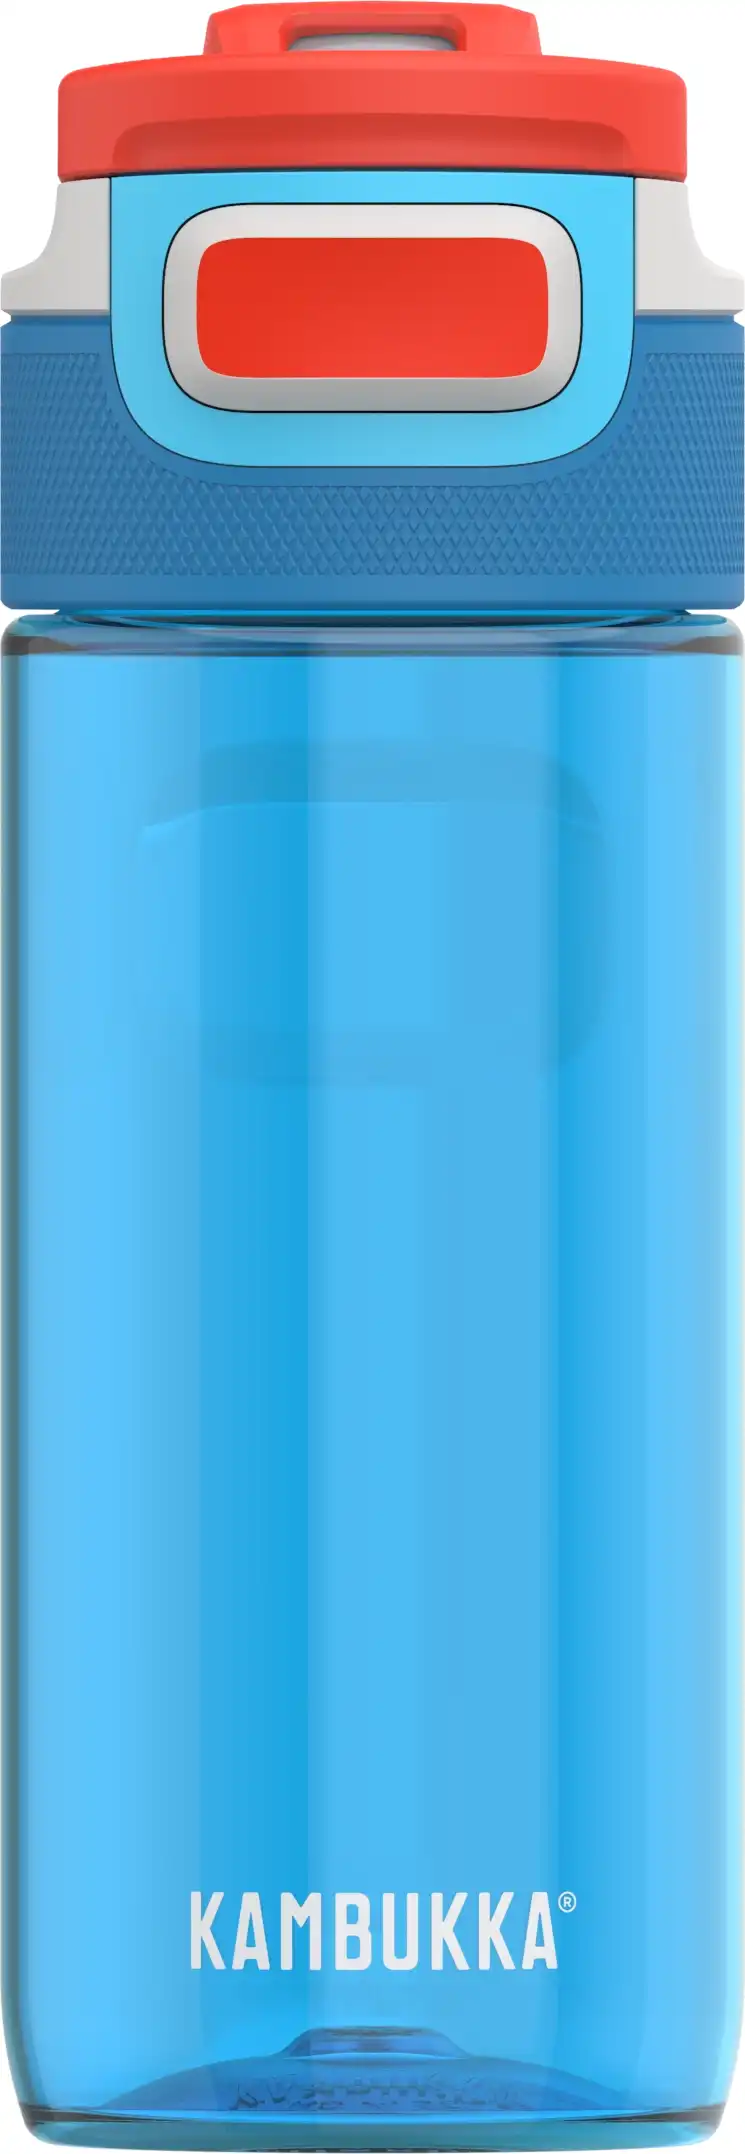 בקבוק שתייה כחול 500 מ"ל Kambukka Caribbean - בסט דיל שופ